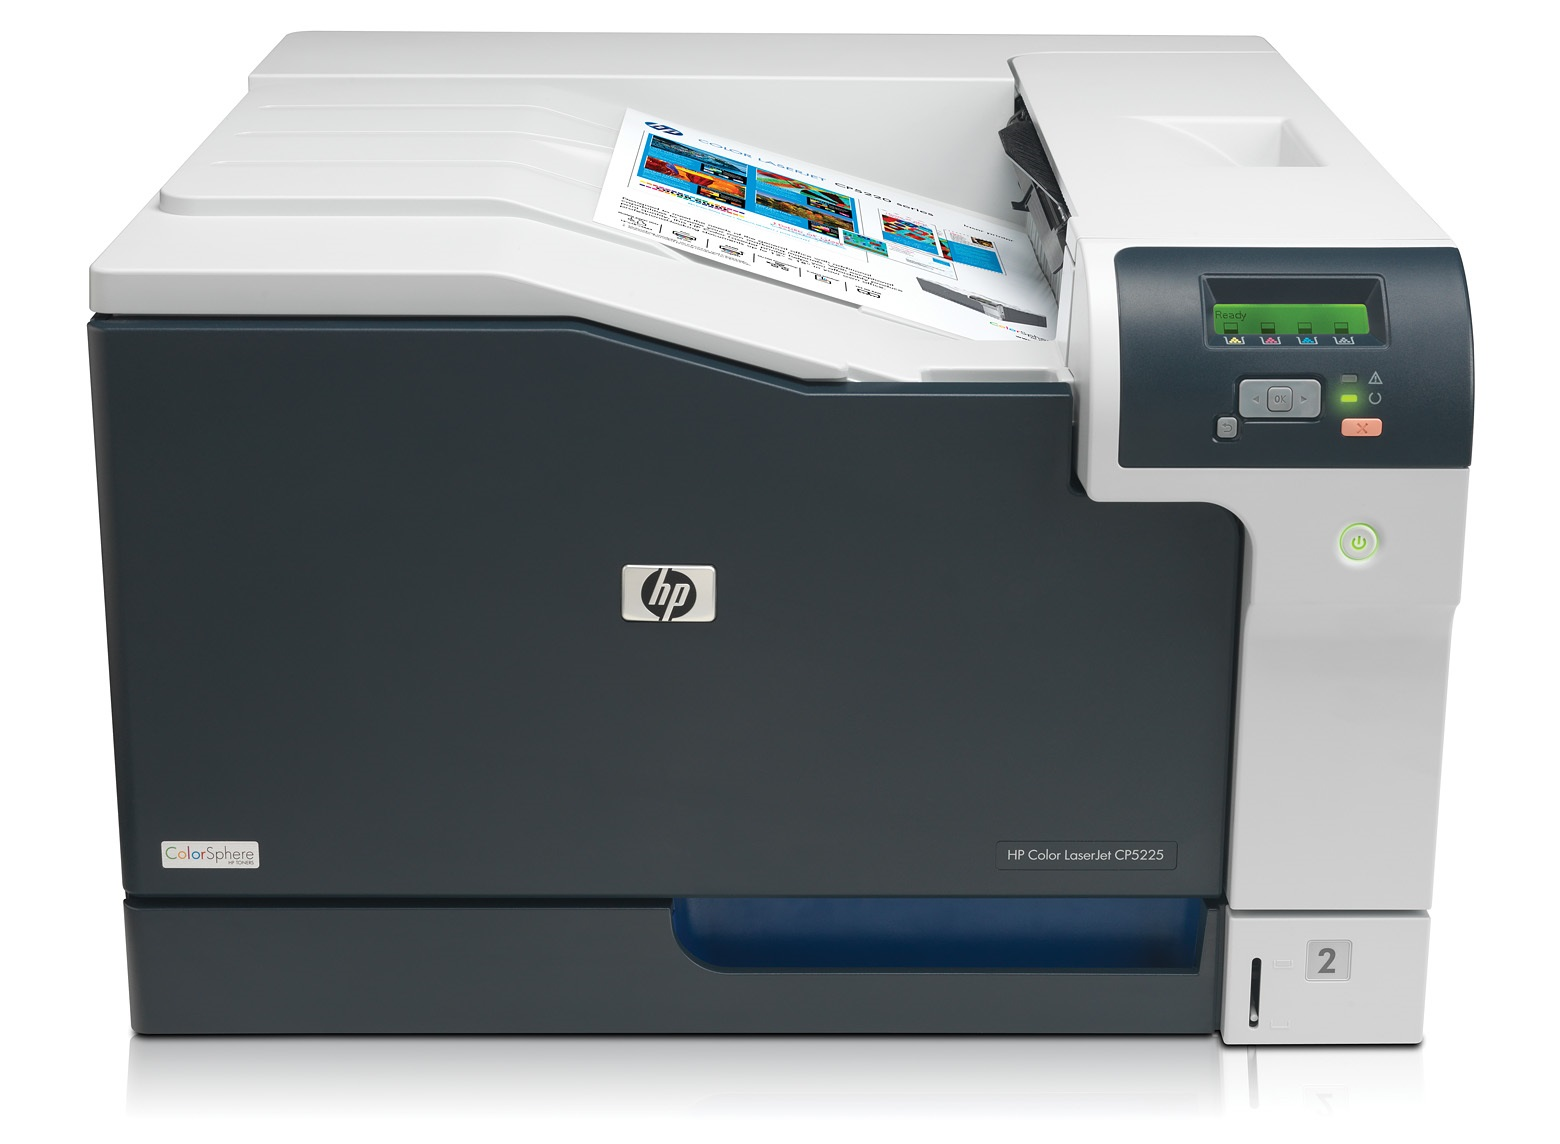 HP Color LaserJet CP5225dn 192MB 20ppm A3 LAN + DUPLEX printeris